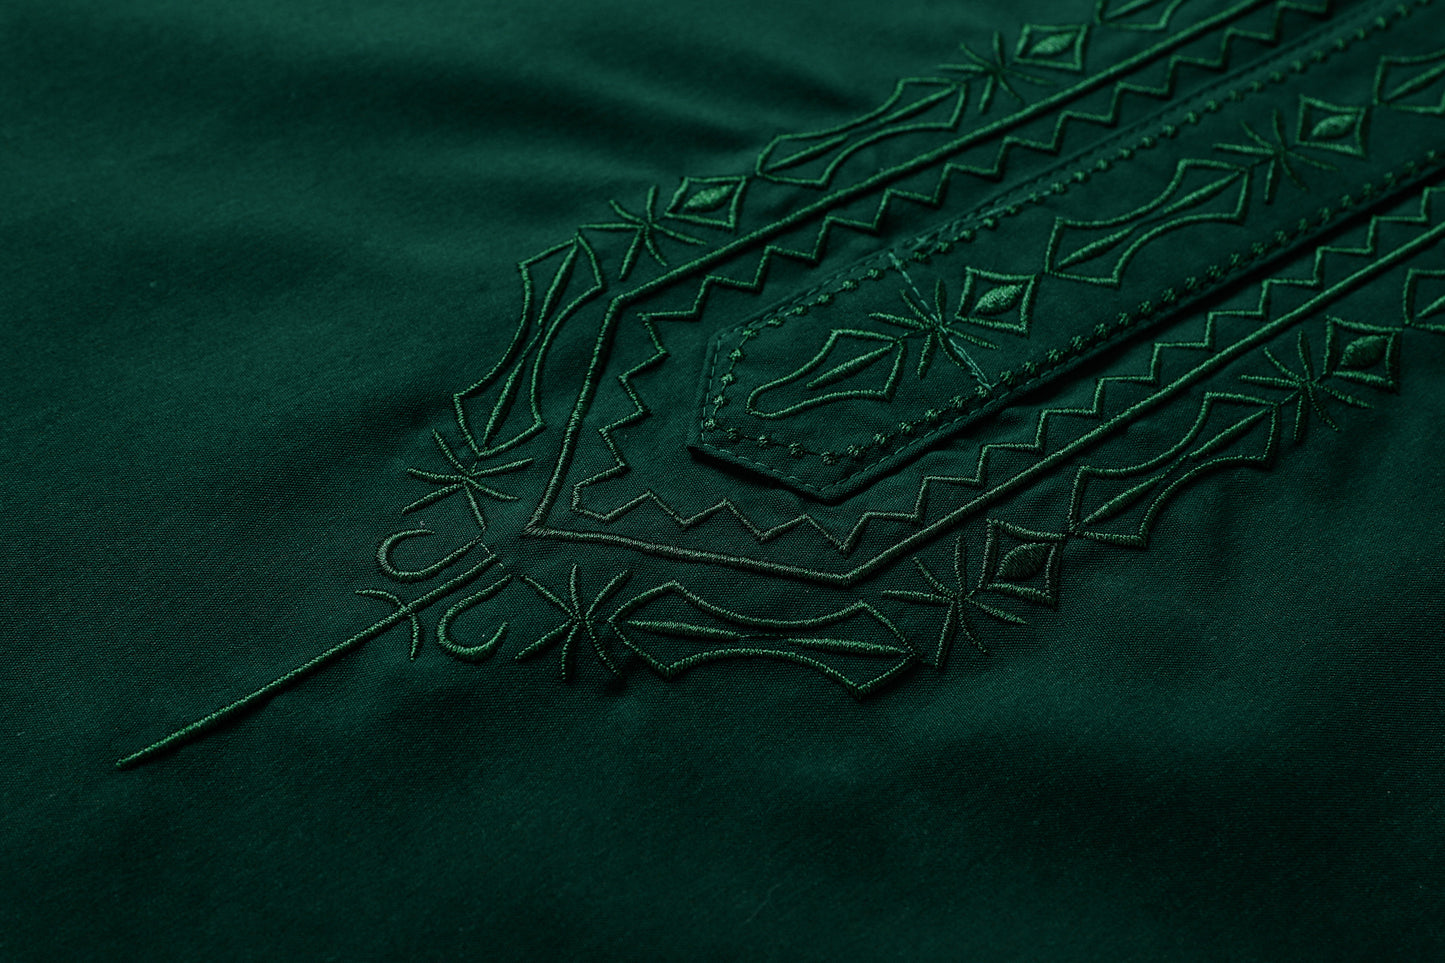  Qamis - Verde Saudita con ricamo della cravatta.